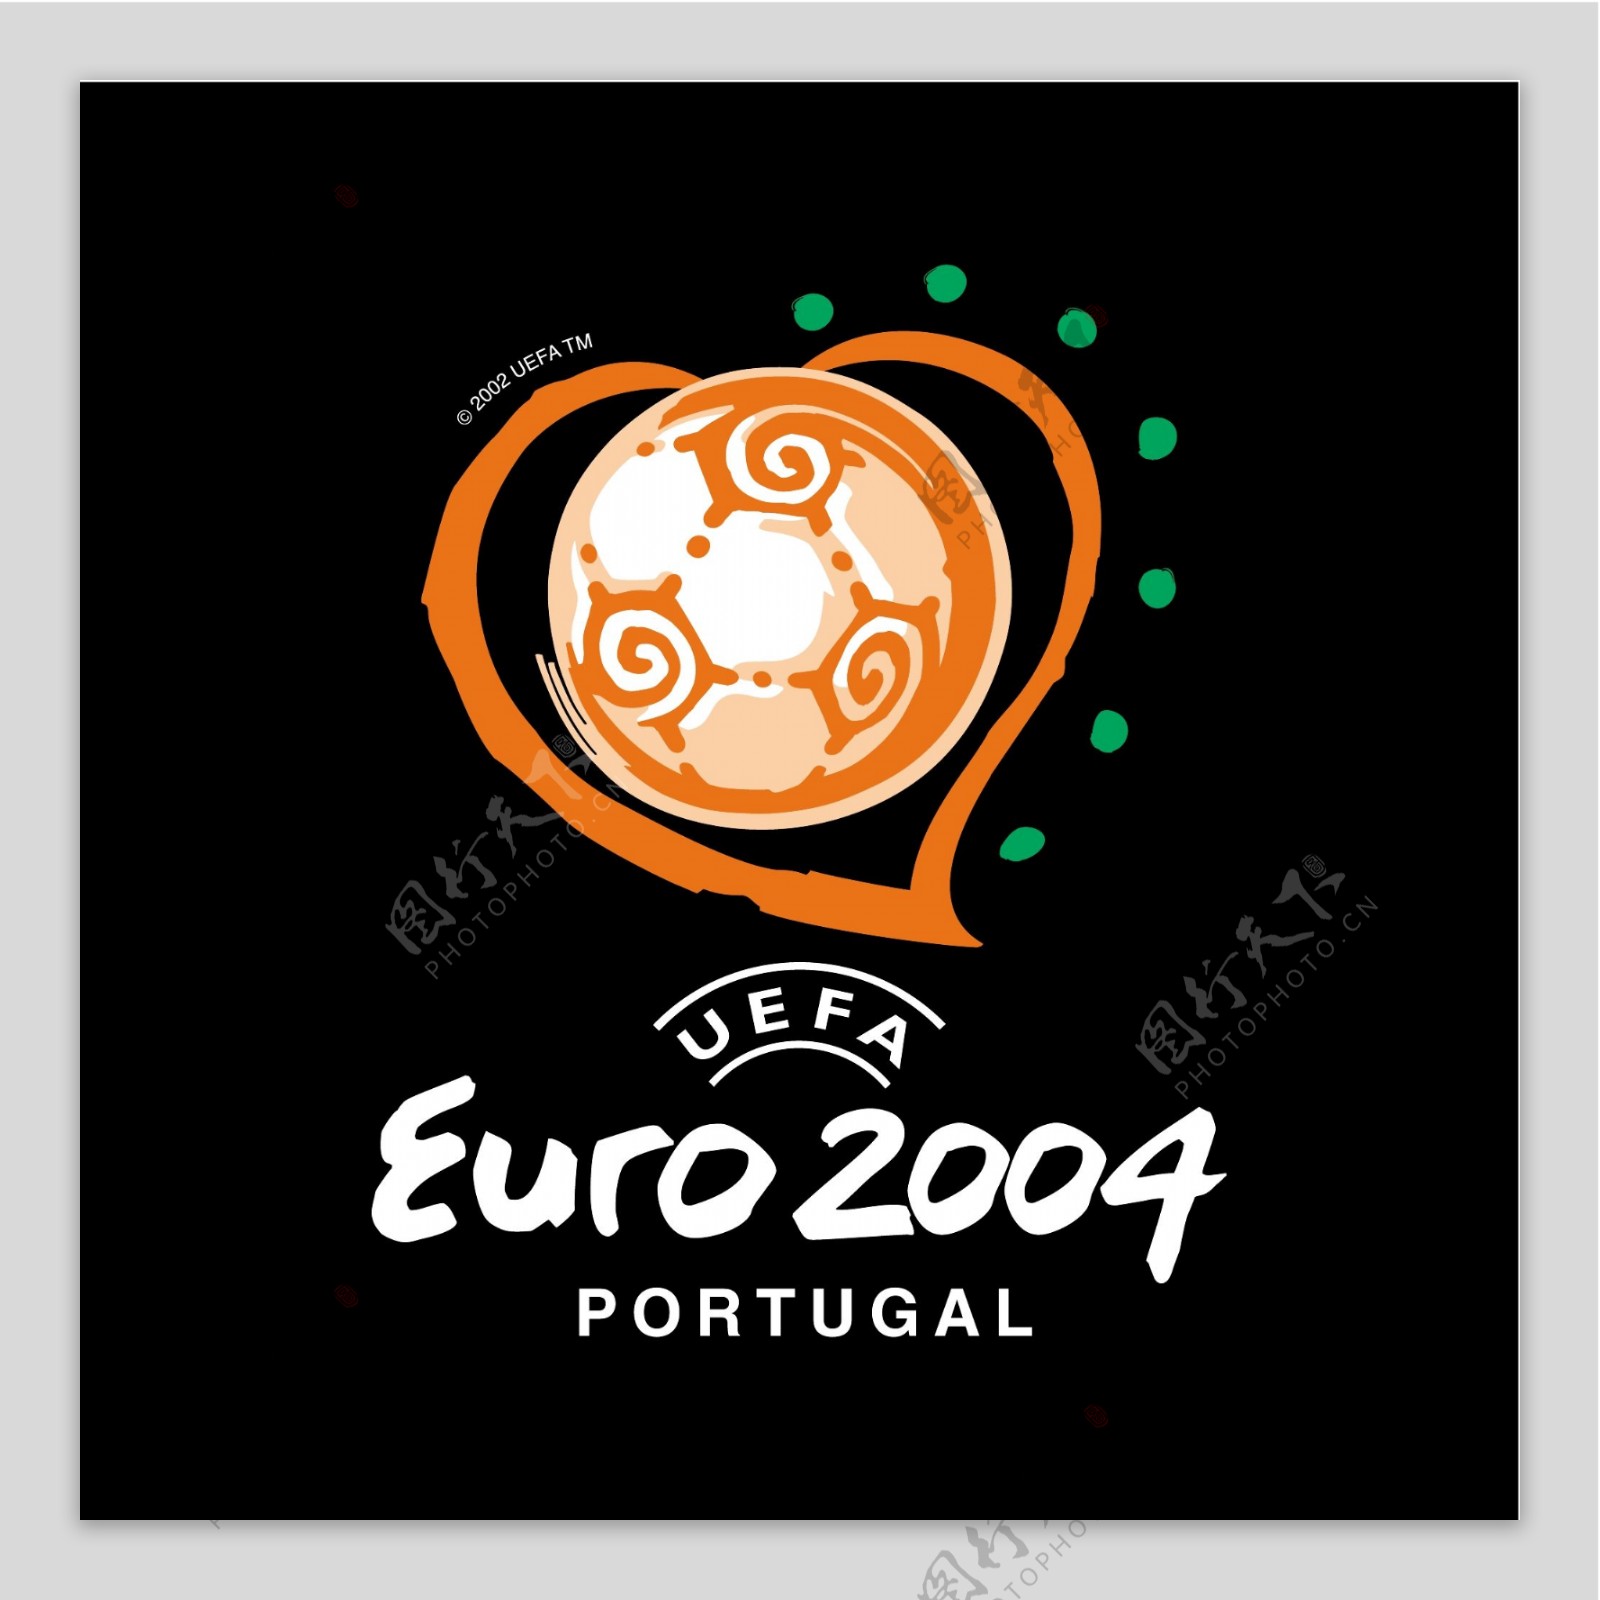 欧洲杯2004葡萄牙1